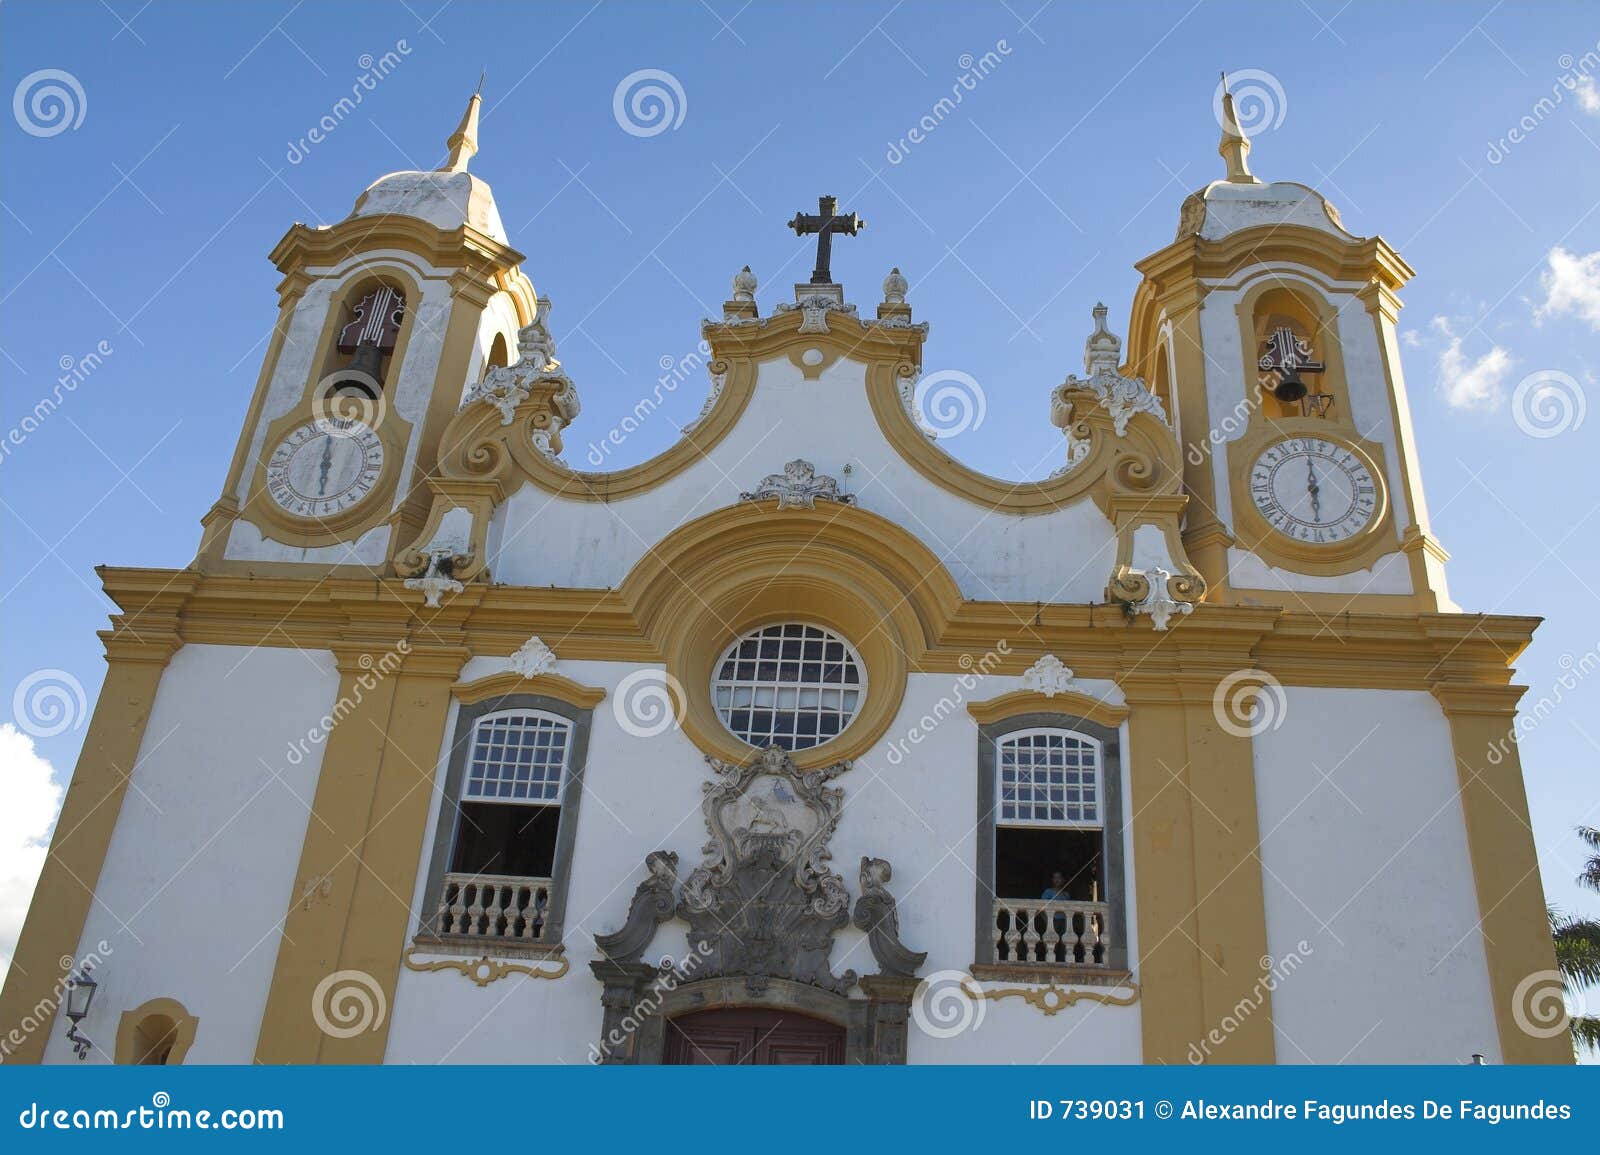 church matriz de santo antonio - tiradentes